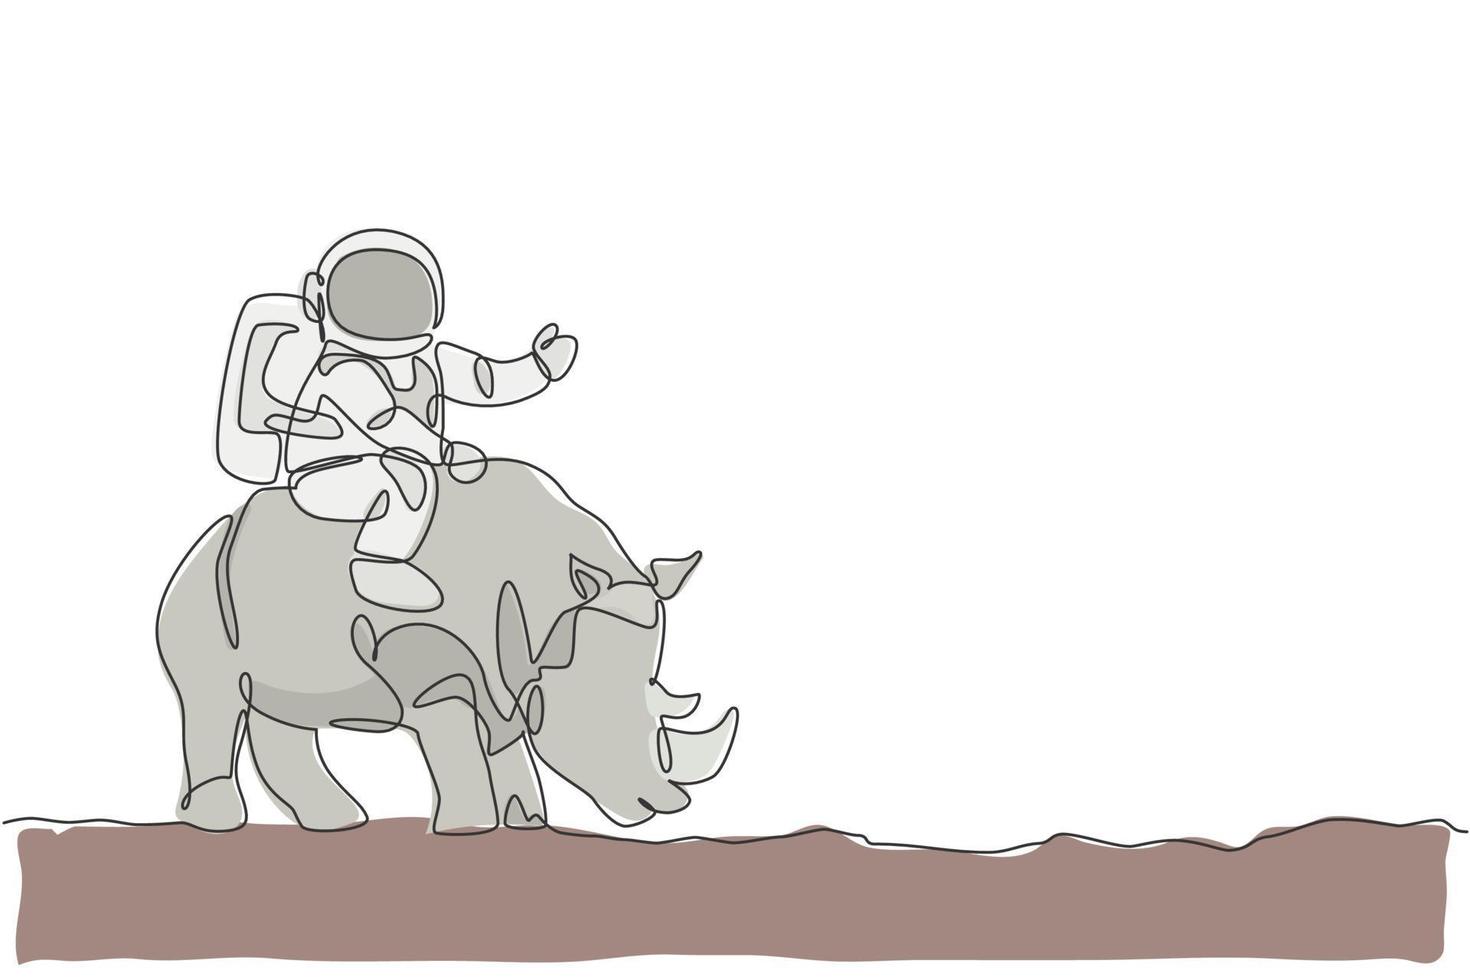 un disegno a tratteggio unico di astronauta che cavalca un rinoceronte, animale selvatico nell'illustrazione vettoriale della superficie lunare. concetto di viaggio safari cosmonauta. moderno disegno grafico a linea continua